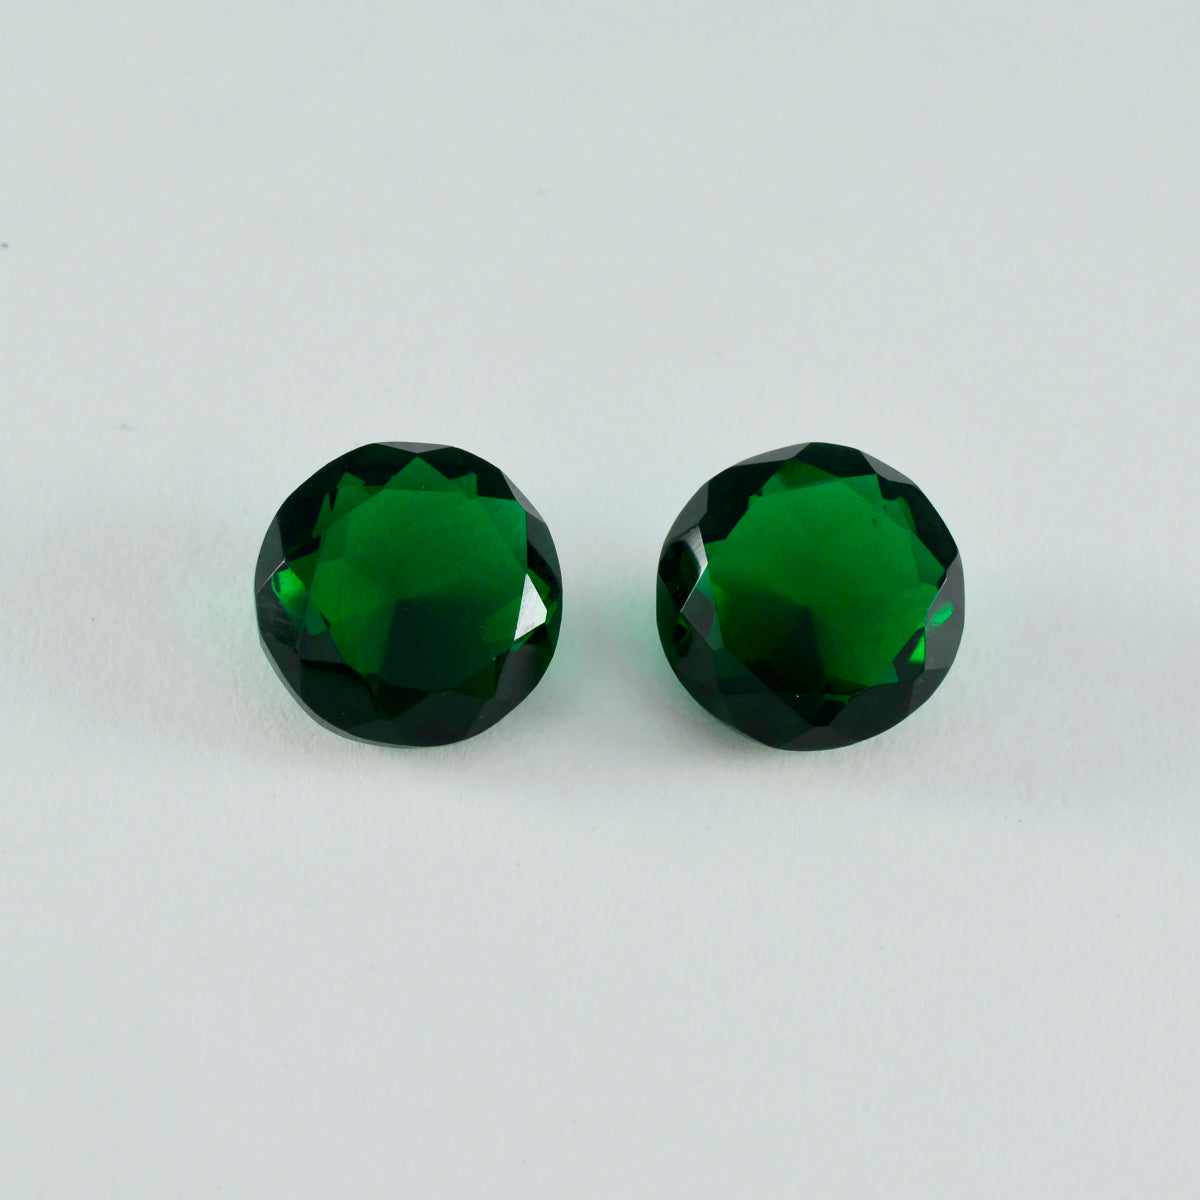 Riyogems 1 Stück grüner Smaragd, CZ, facettiert, 13 x 13 mm, runde Form, schöne Qualitätsedelsteine